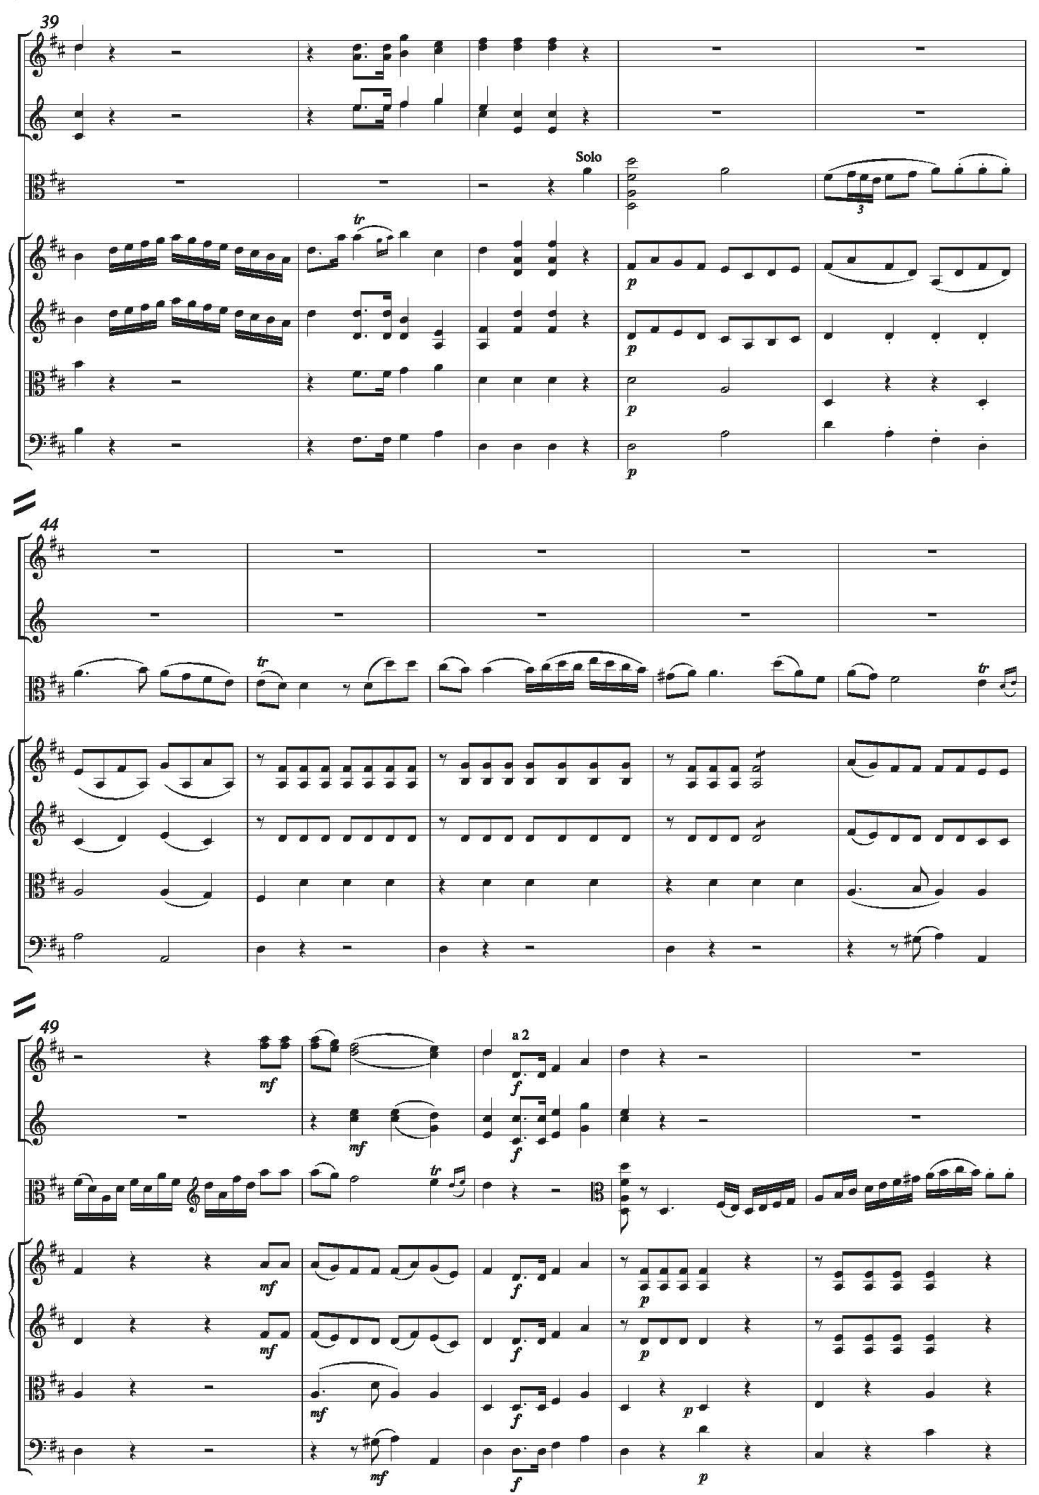 F A Hoffmeister Concerto re maggiore viola Partitura